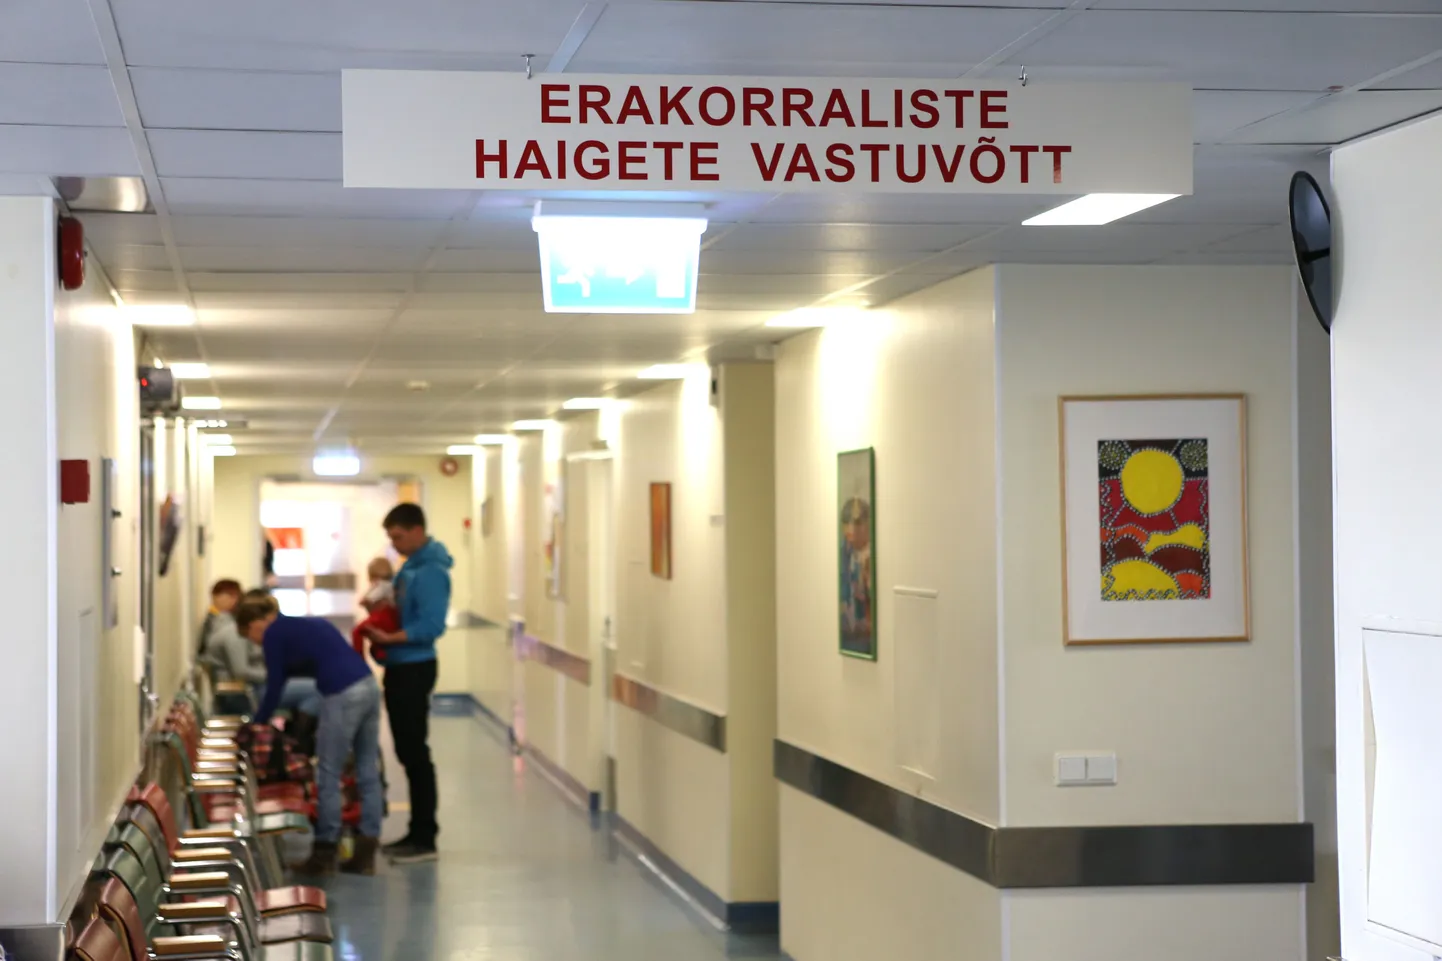 Руководство Таллиннской детской больницы не принимает во внимание негативные отзывы о работе своего персонала, если они не являются официальной жалобой.